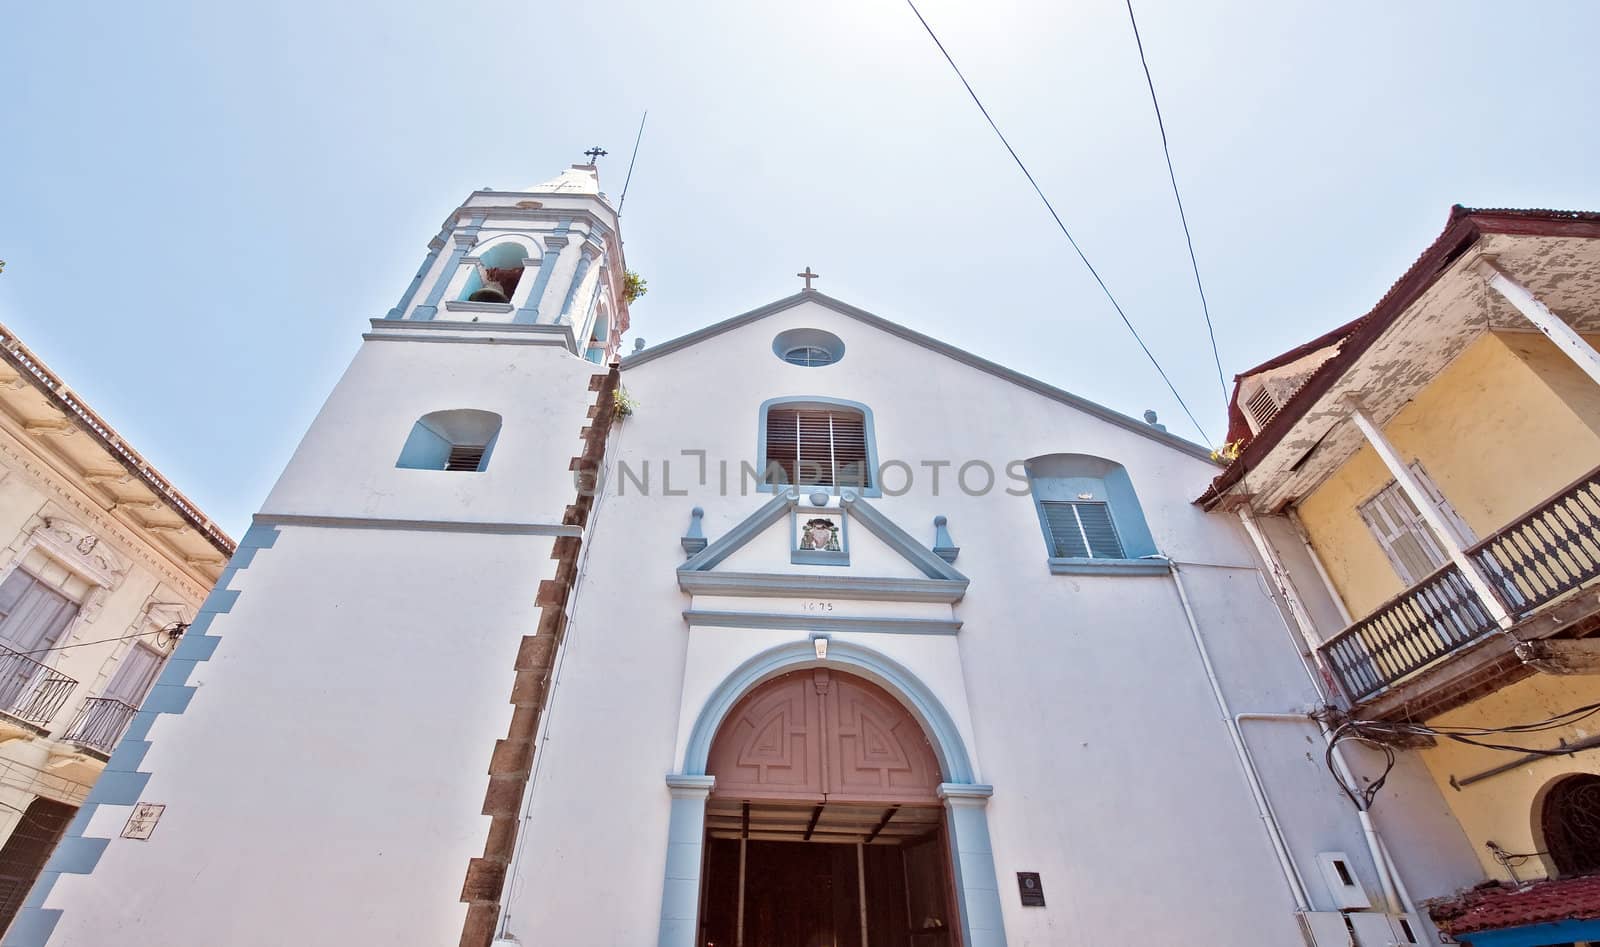 Old church in Casco vieja in Panama city